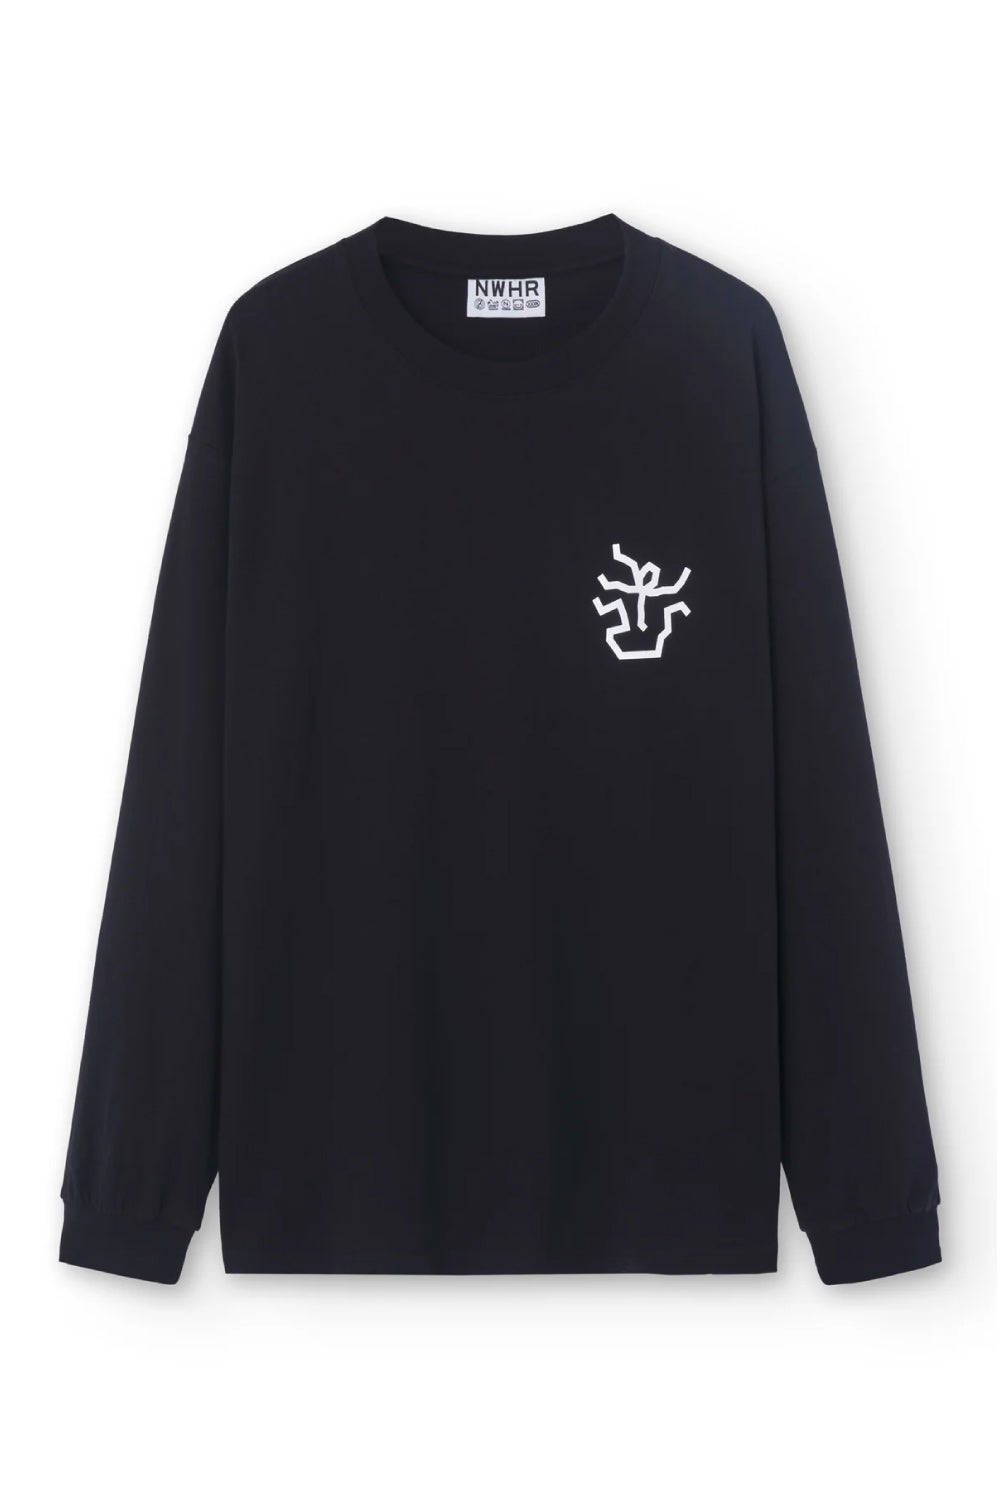 camiseta en negro de algodón orgánico con mangas largas y pequeño dibujo en el pecho